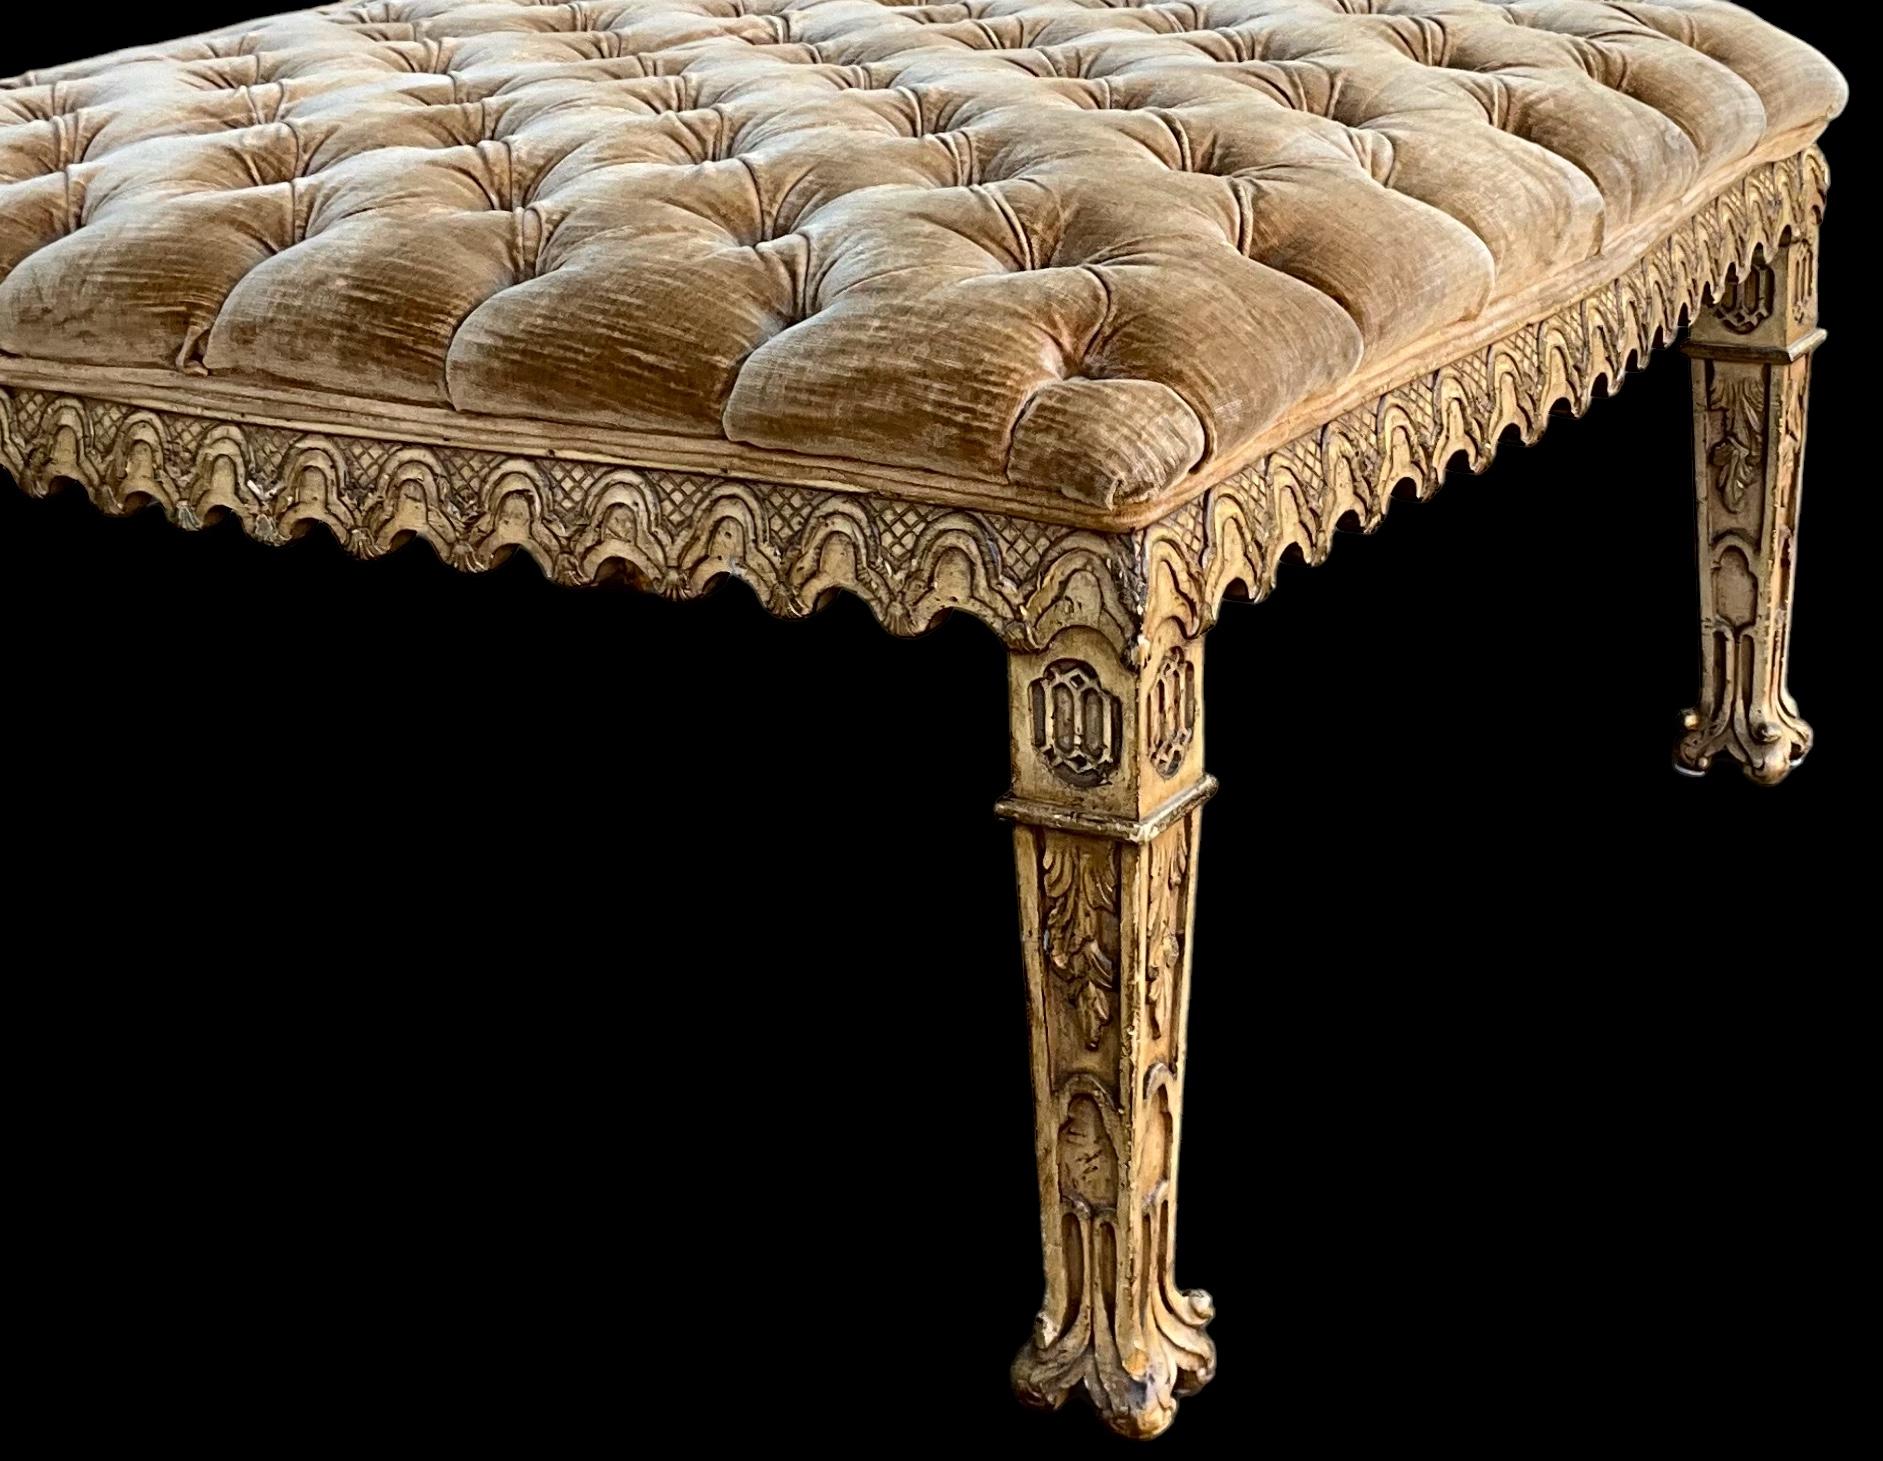 Il s'agit d'un ottoman de style vénitien lourdement sculpté. Le revêtement en velours touffeté est d'origine et présente une légère usure, mais il n'y a pas de déchirures ni de taches. La pièce n'est pas marquée.